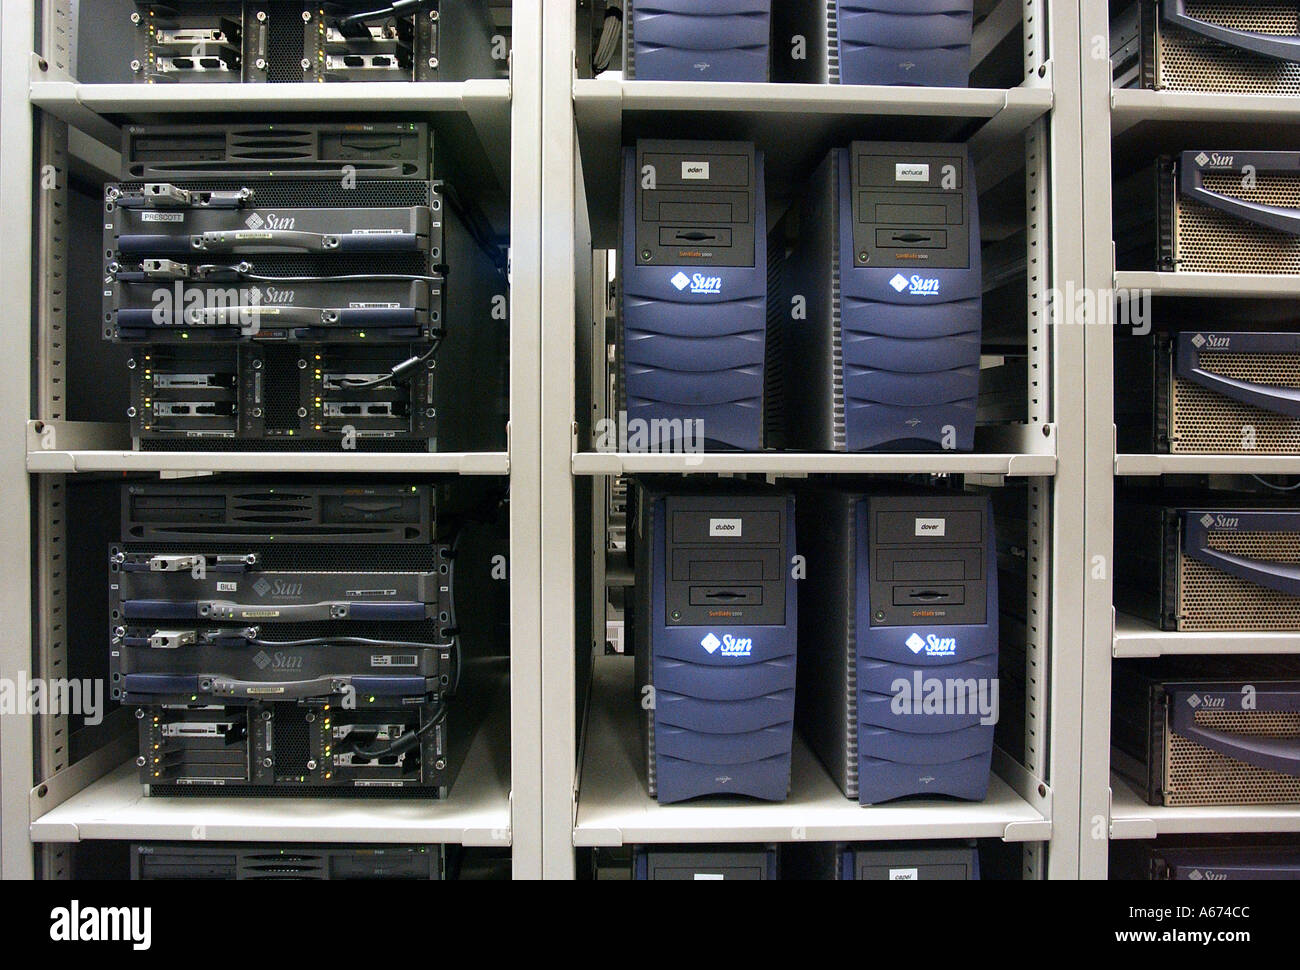 Los servidores y los routers son vistos en un rancho de servidor Foto de stock